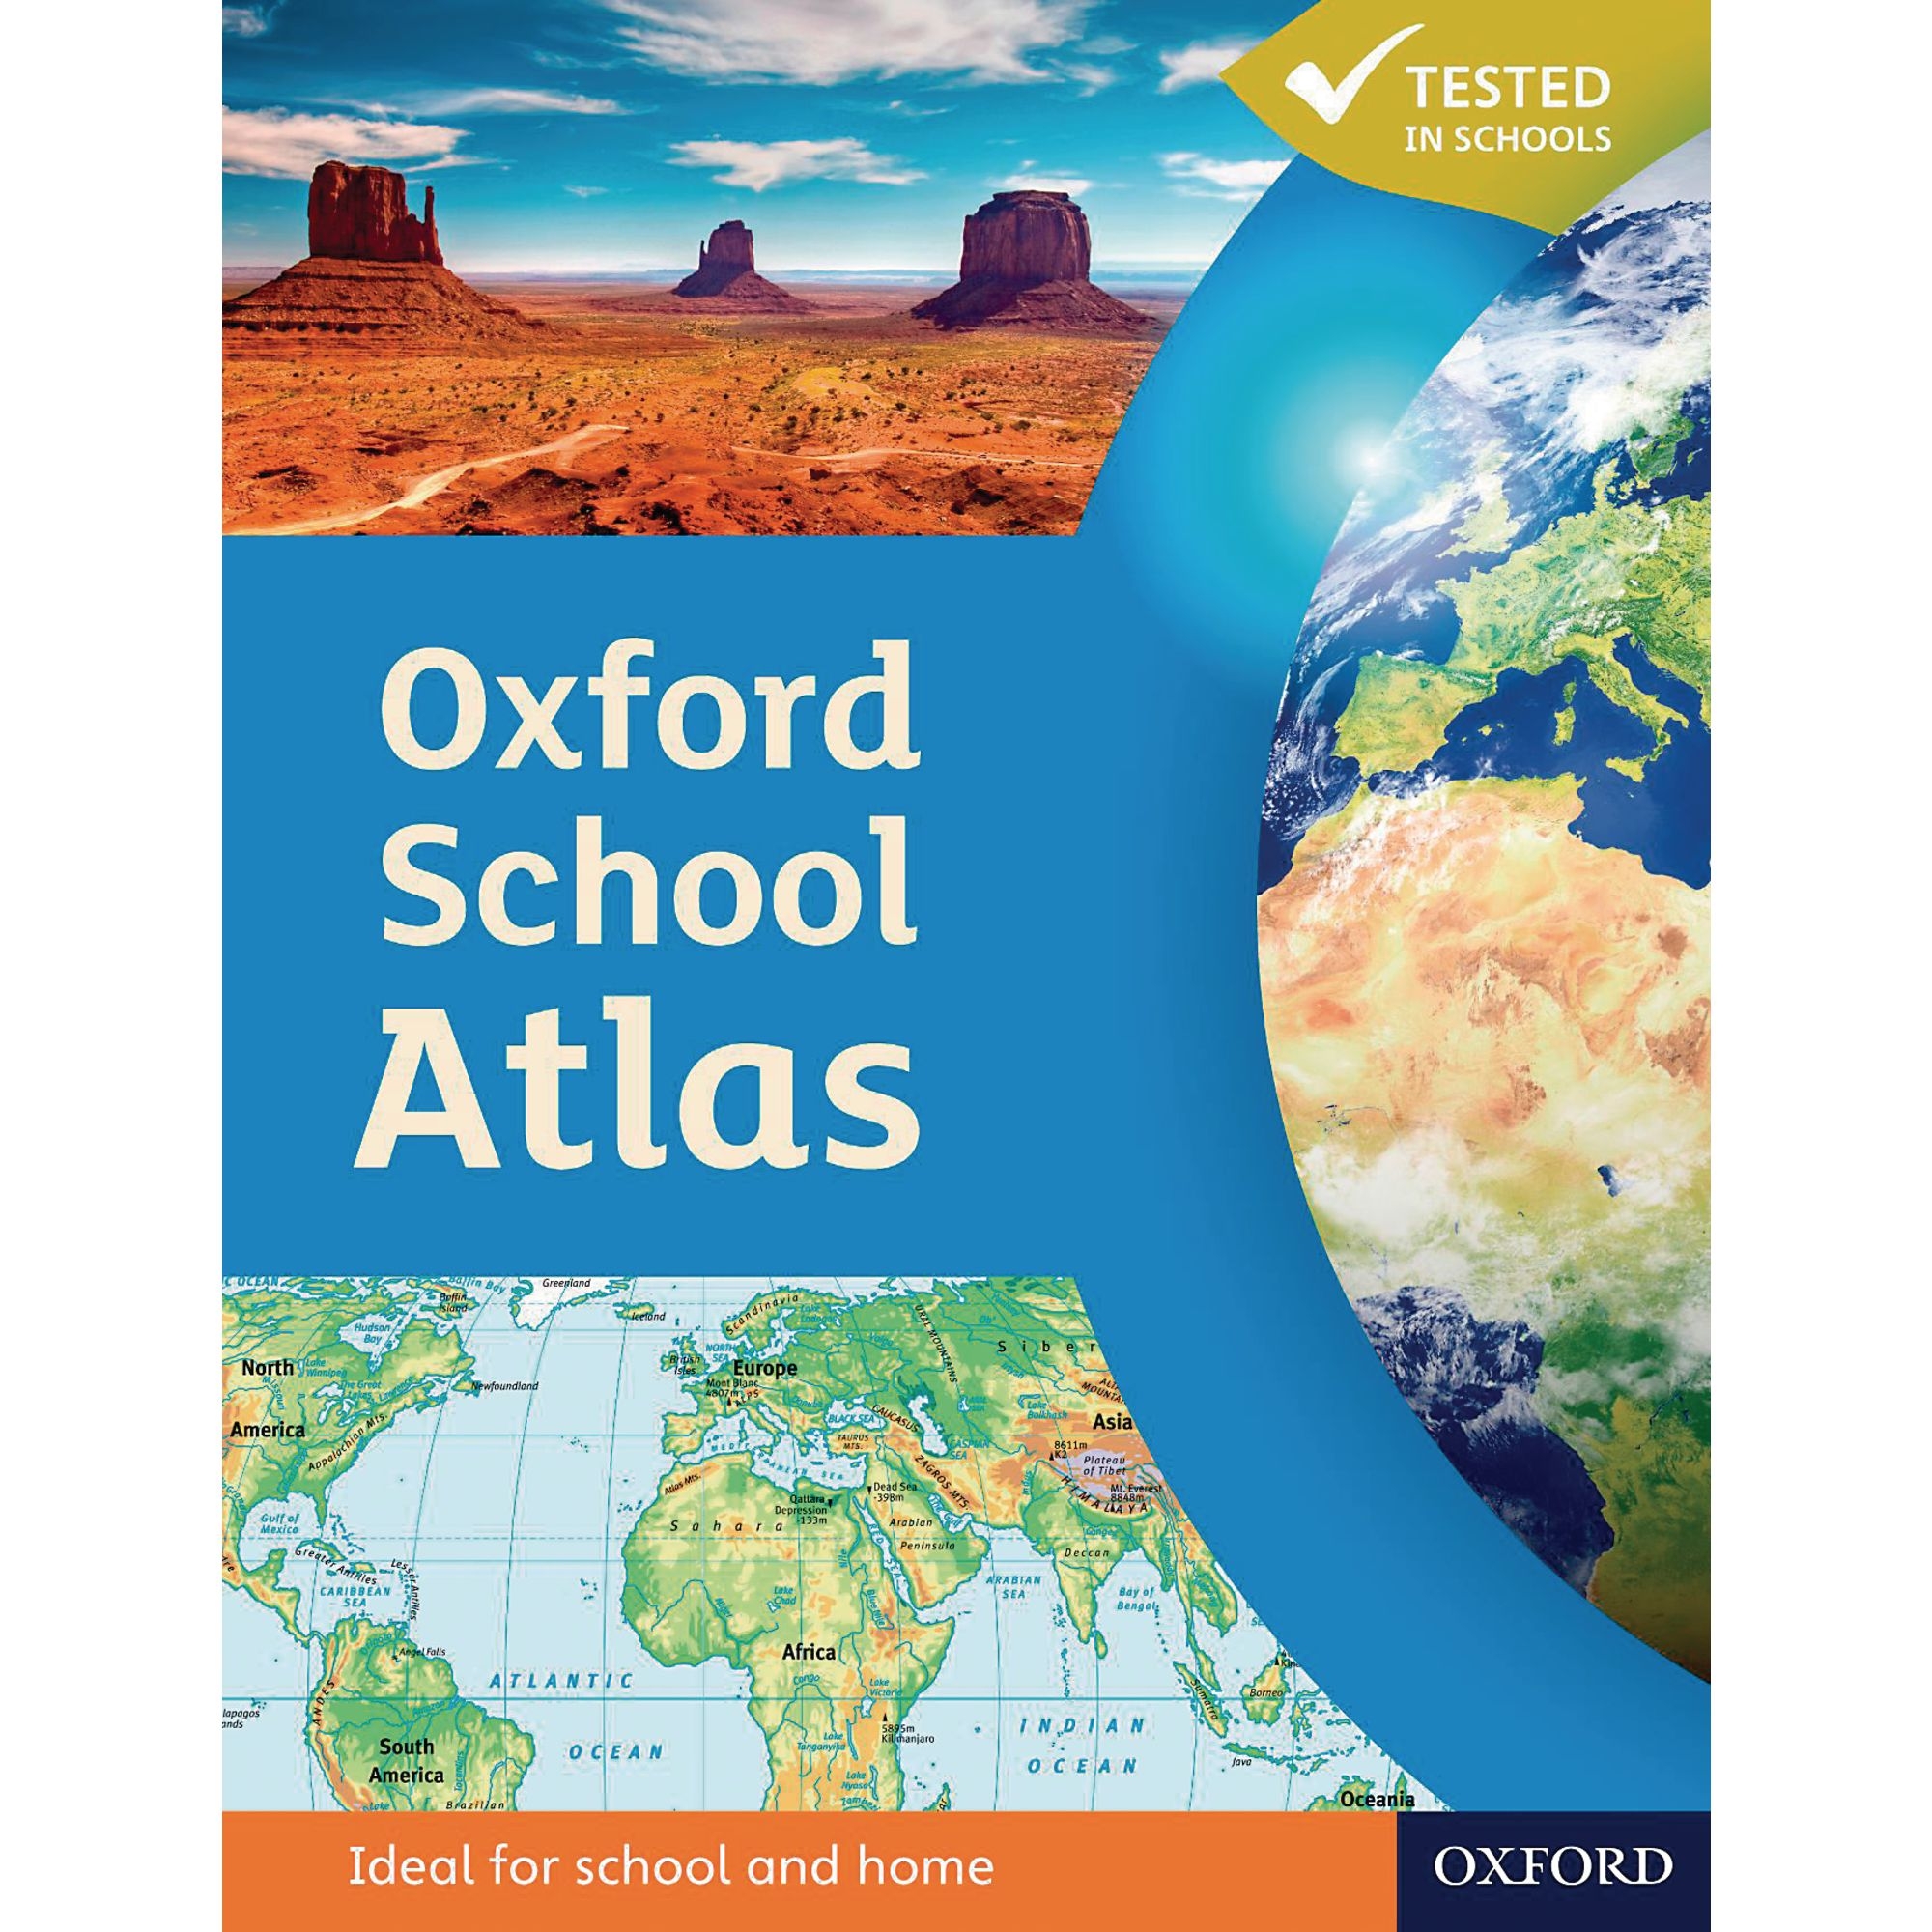 Oxford School Atlas Pack 5